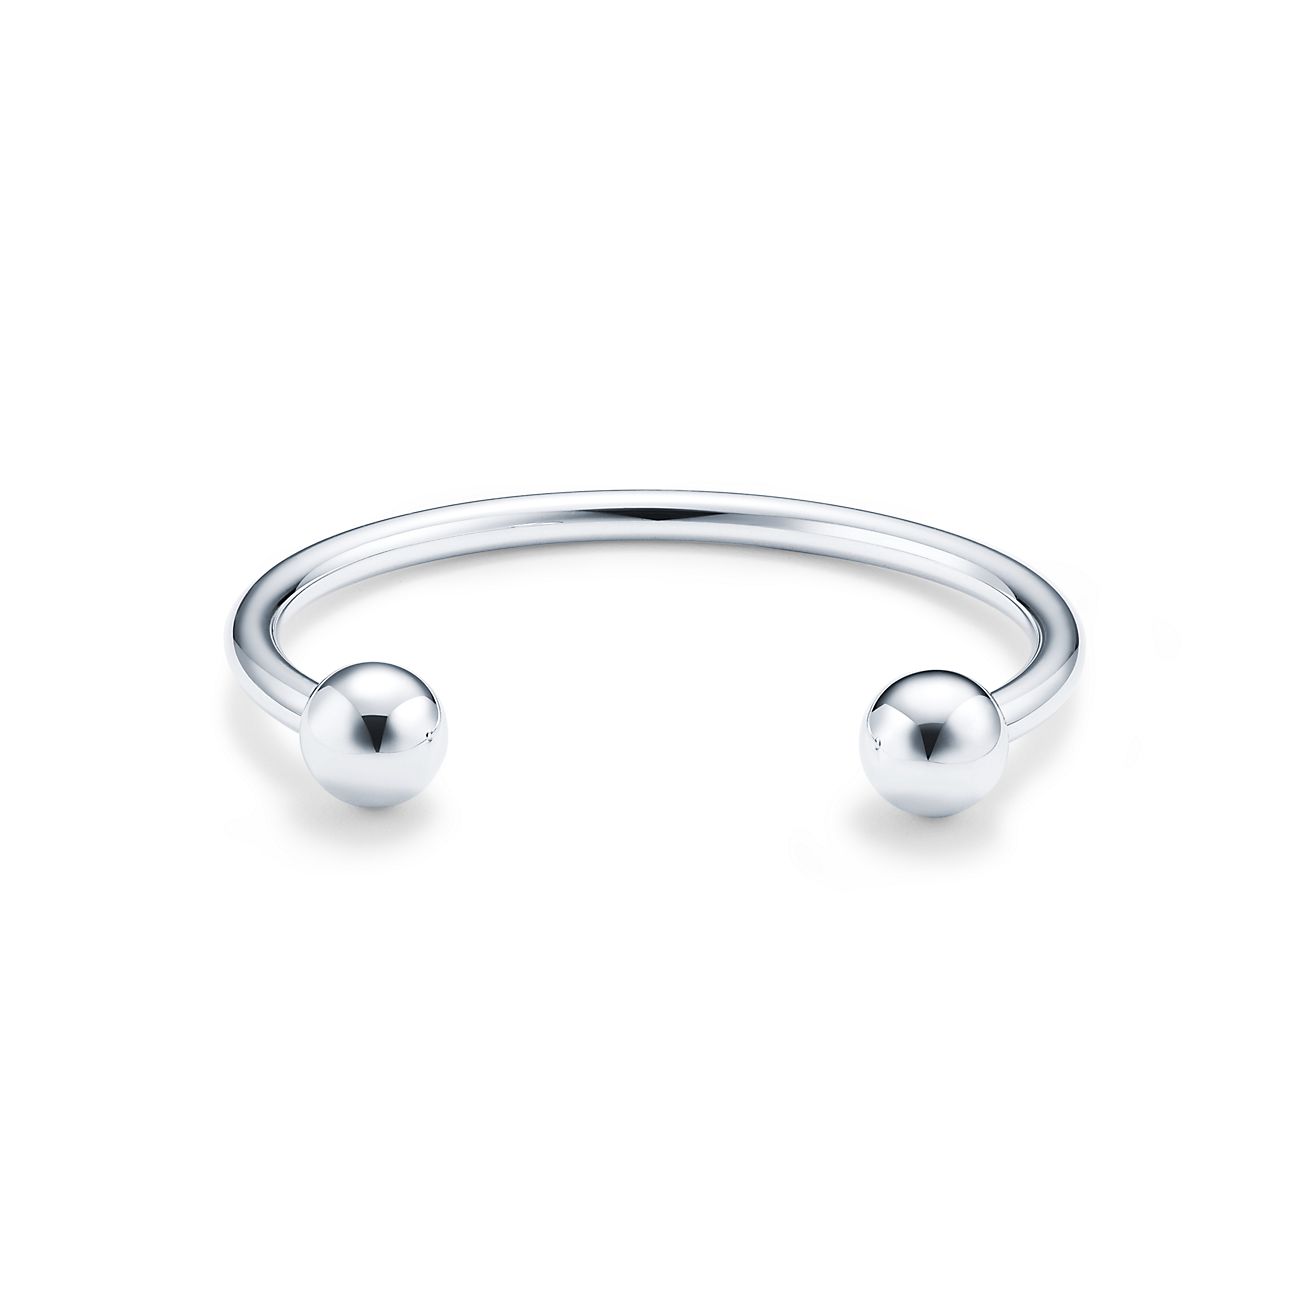 Tiffany HardWear ball wire bracelet in 